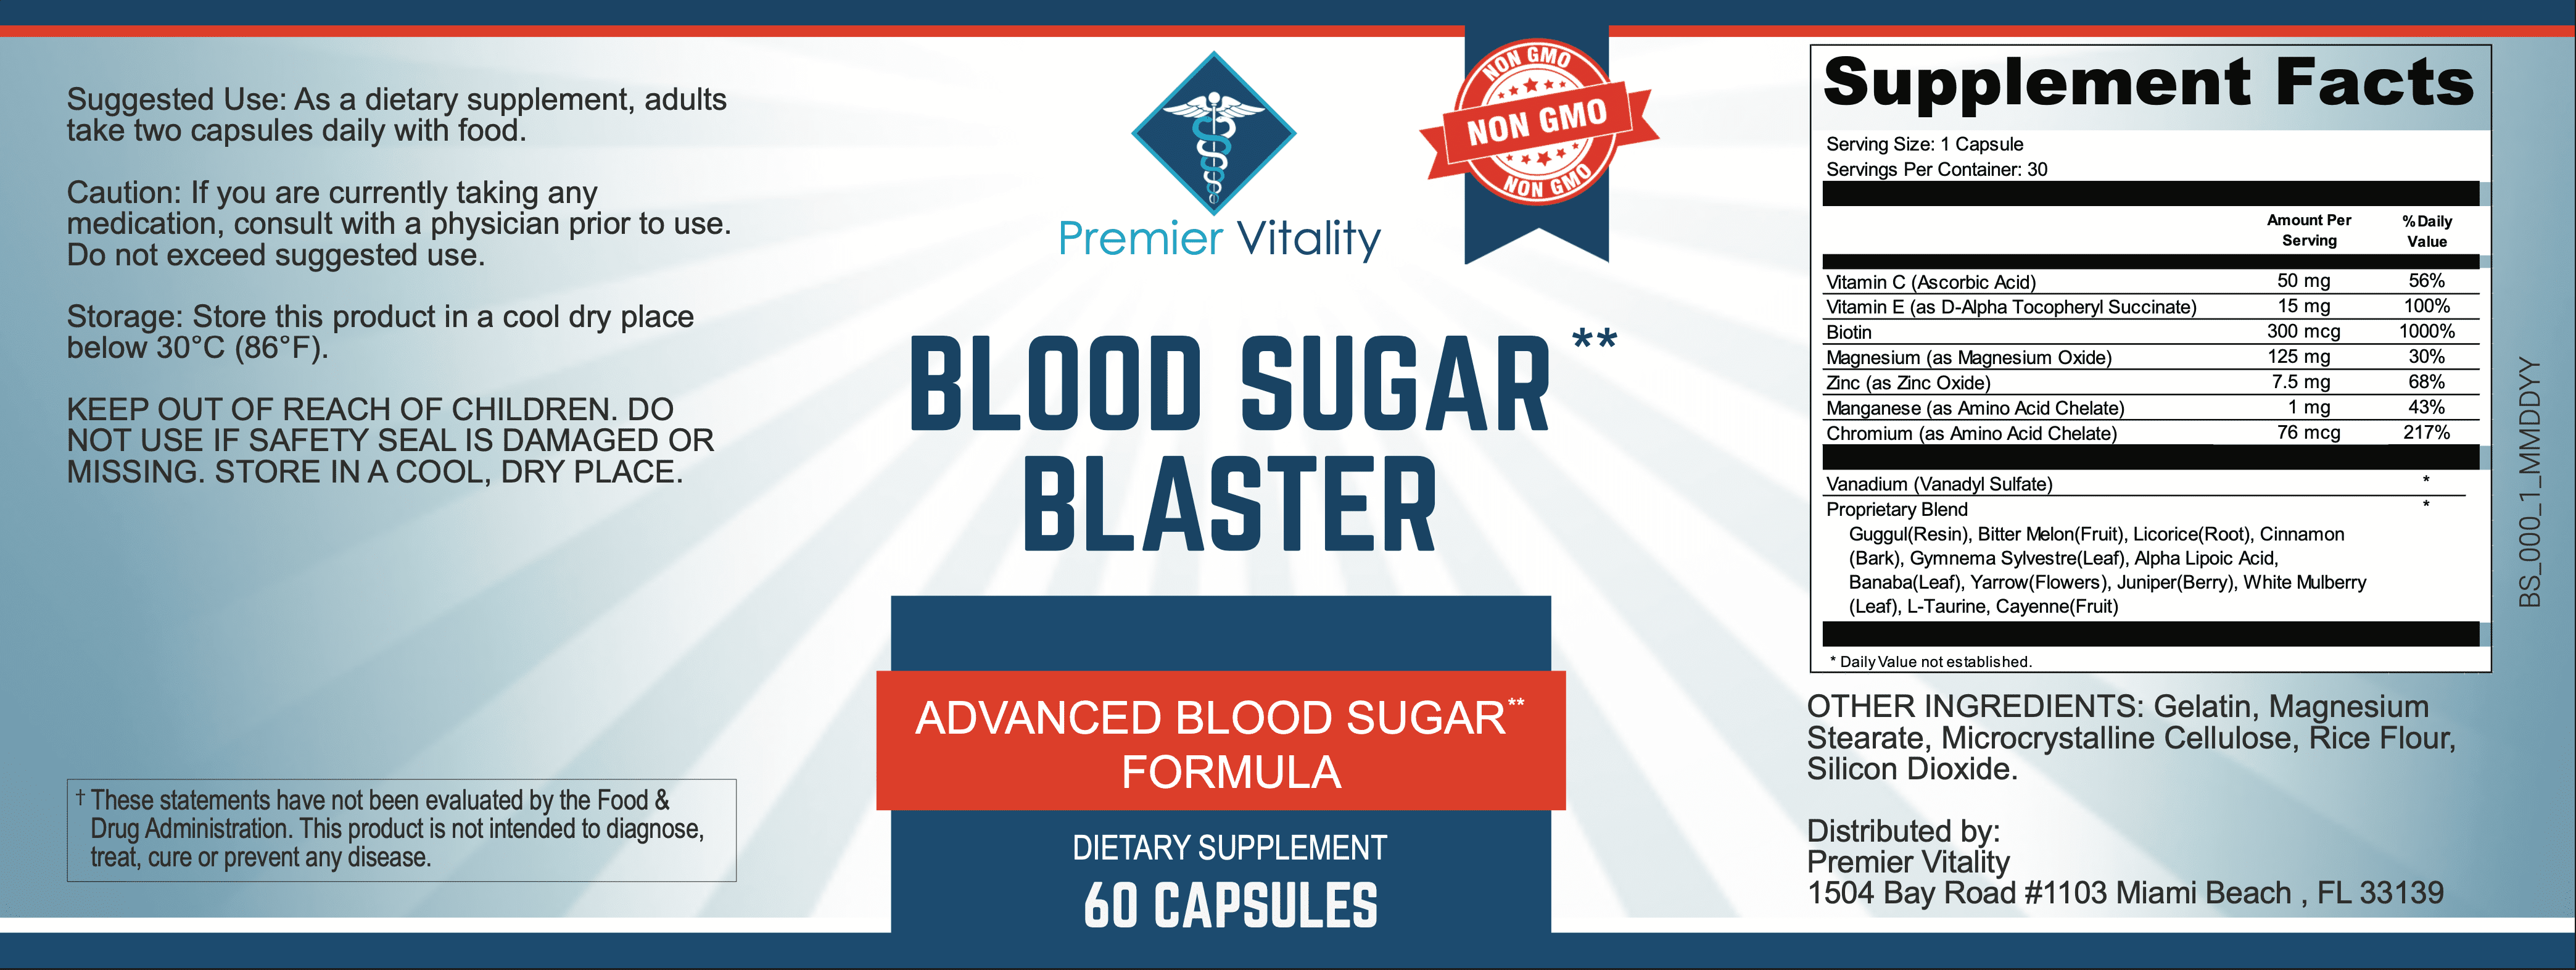 Blood Sugar Blaster blood sugar supplement Facts